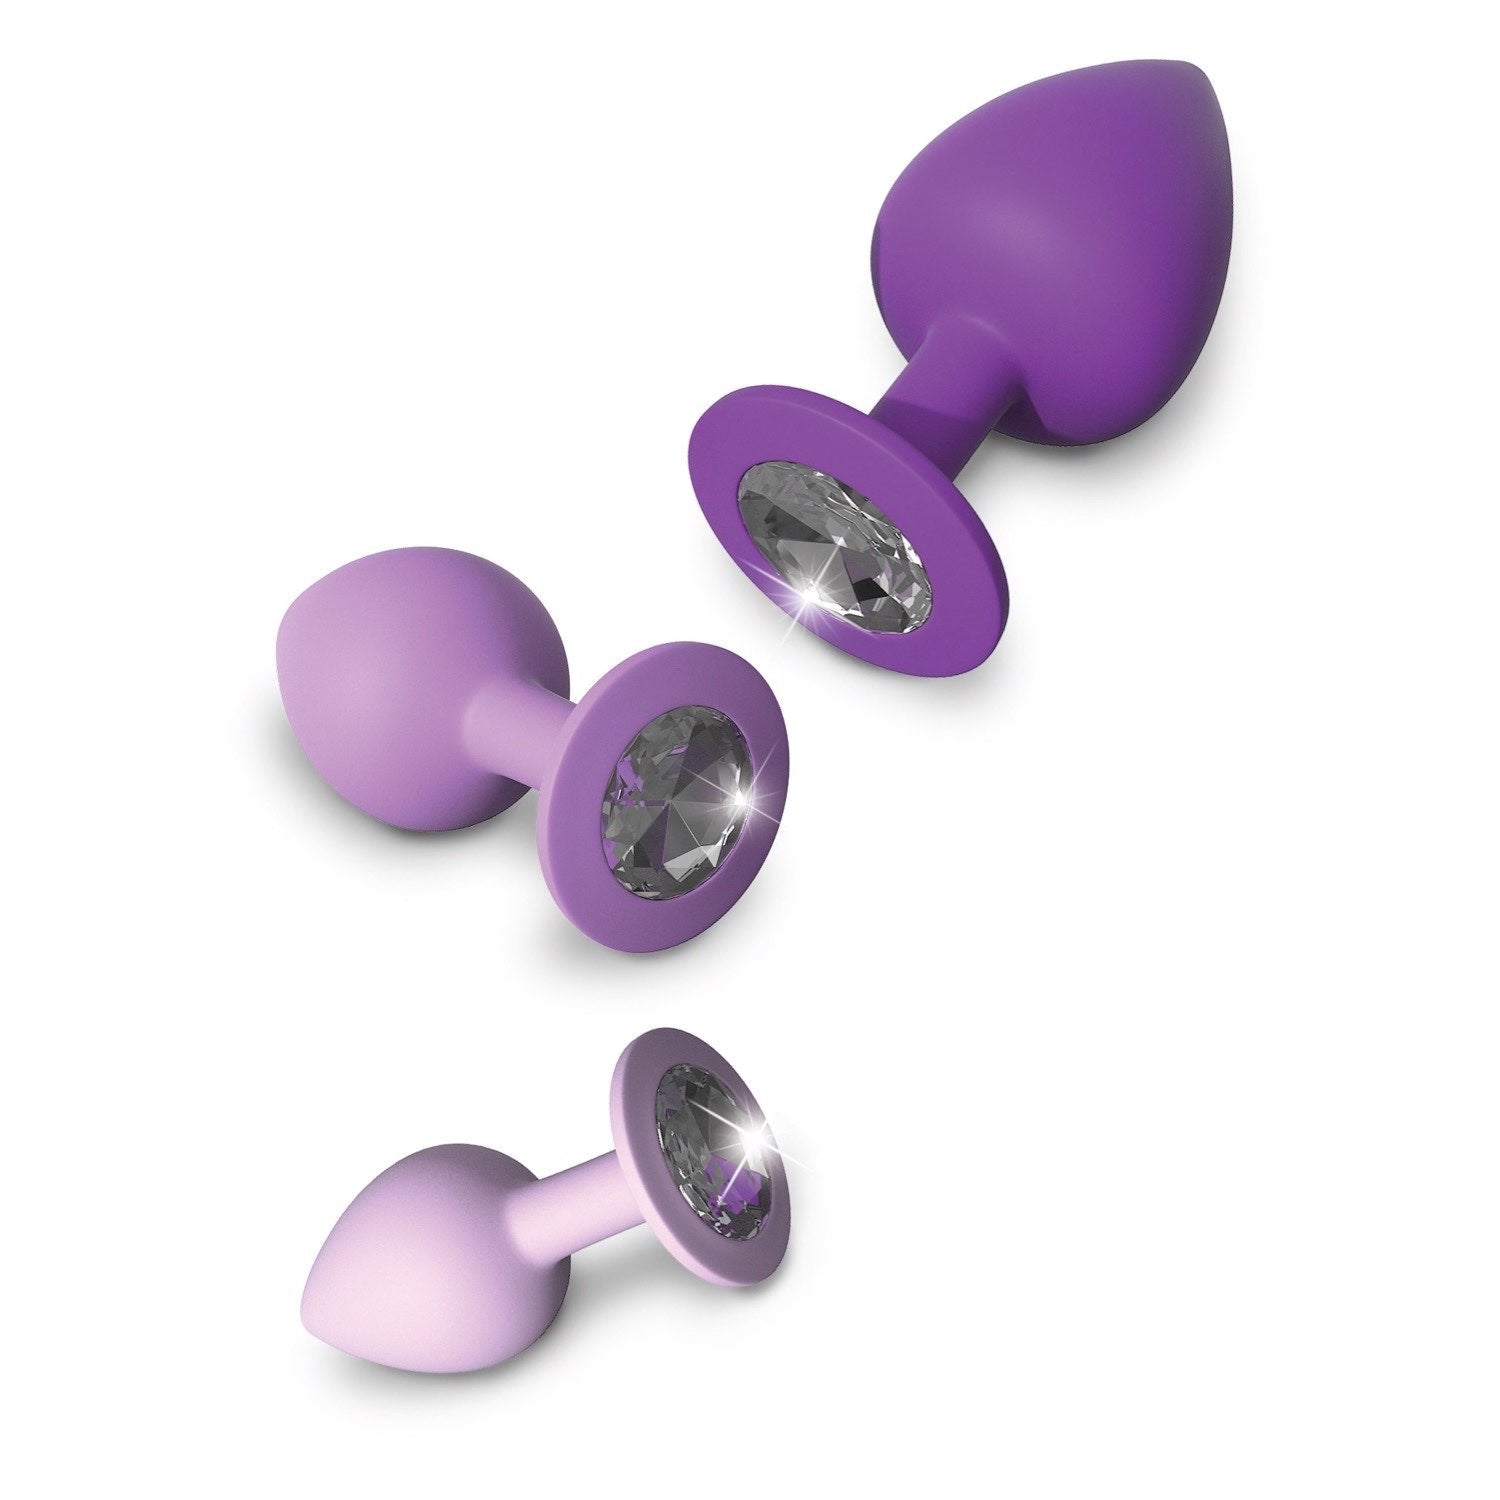 为她幻想 Little Gems 训练器套装 - 带宝石底座的紫色屁股塞 - 3 种尺寸套装 by Pipedream